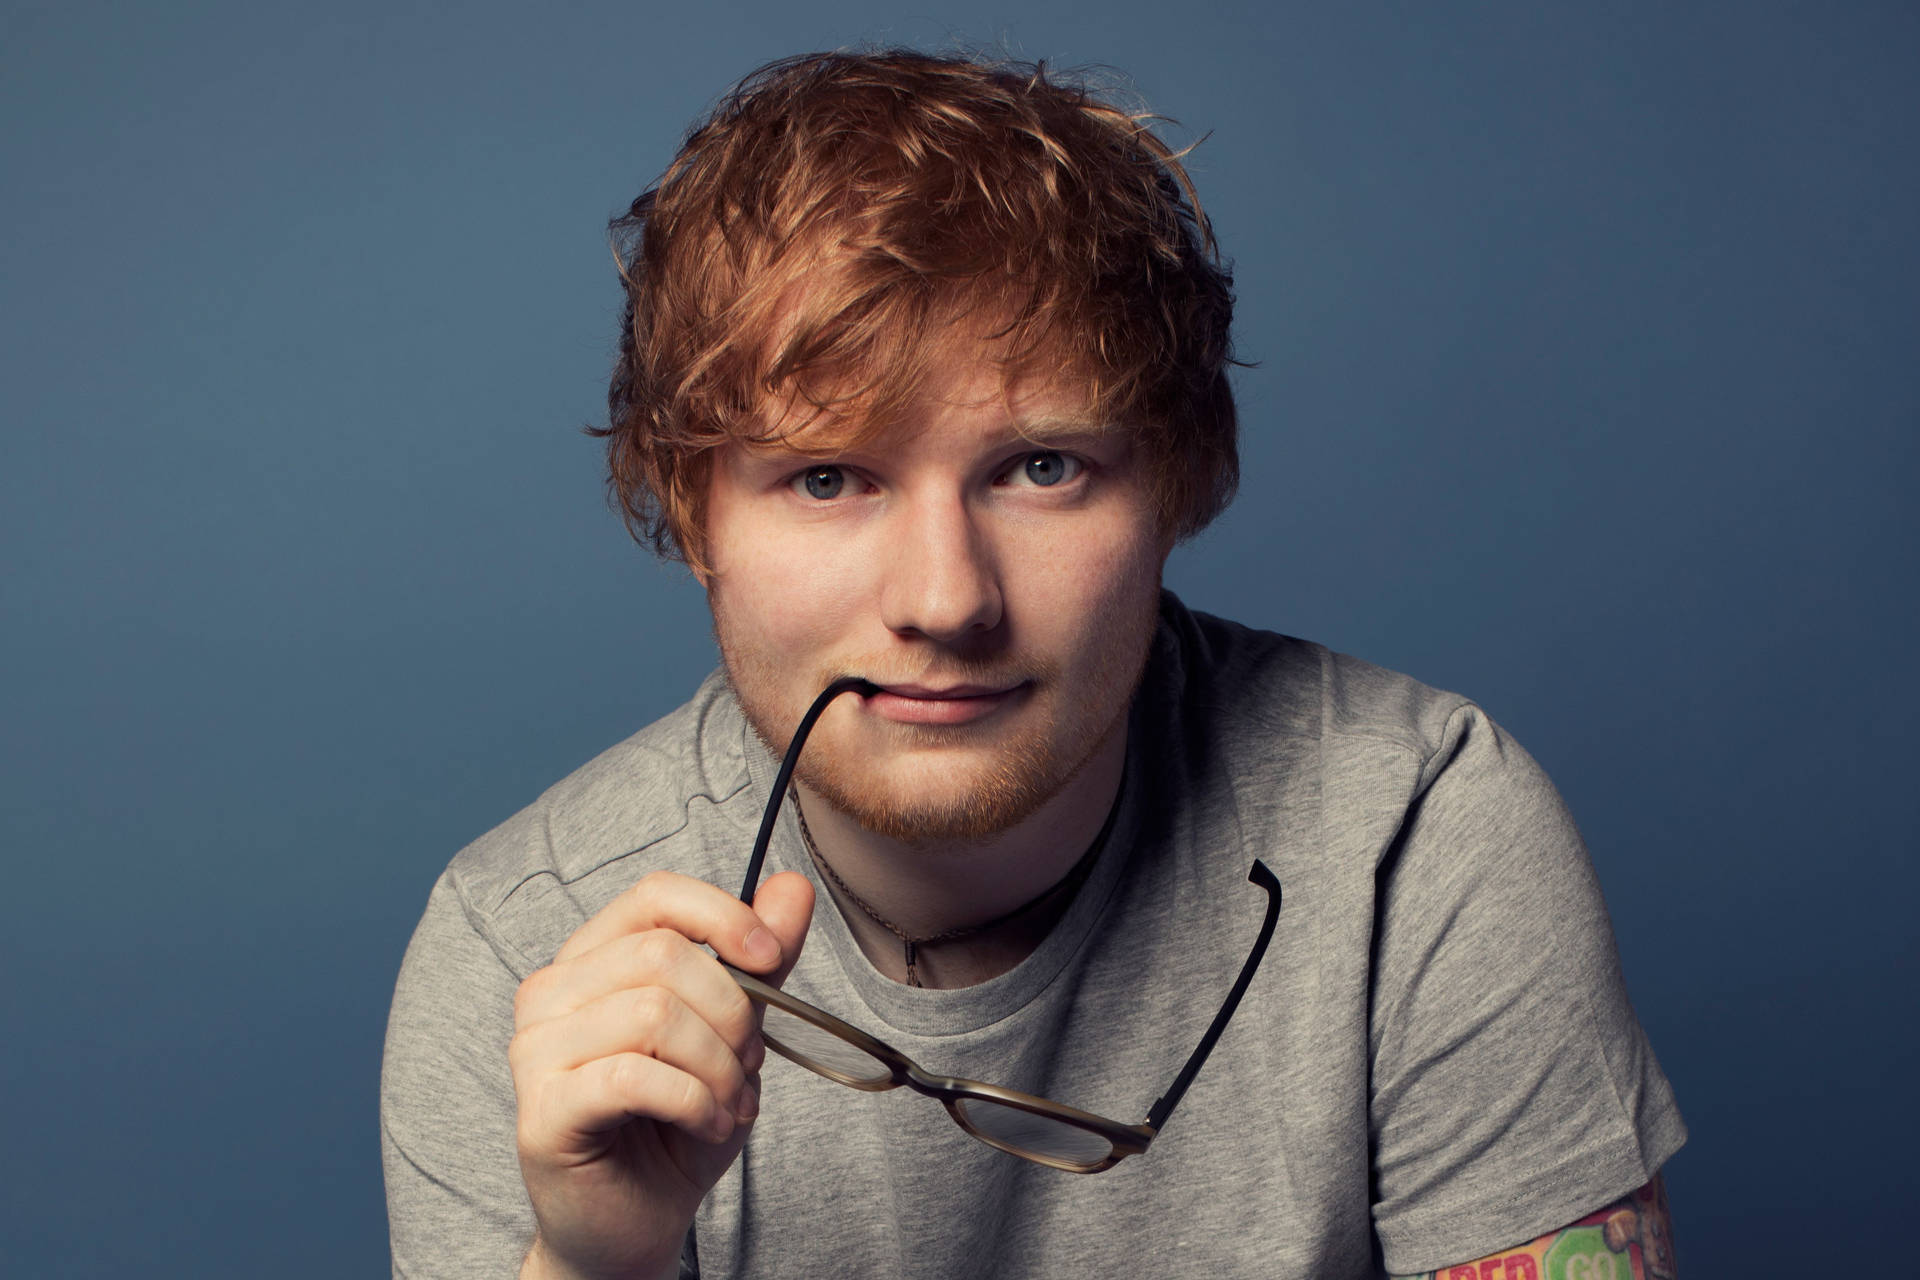 Ed Sheeran Wallpaper Images